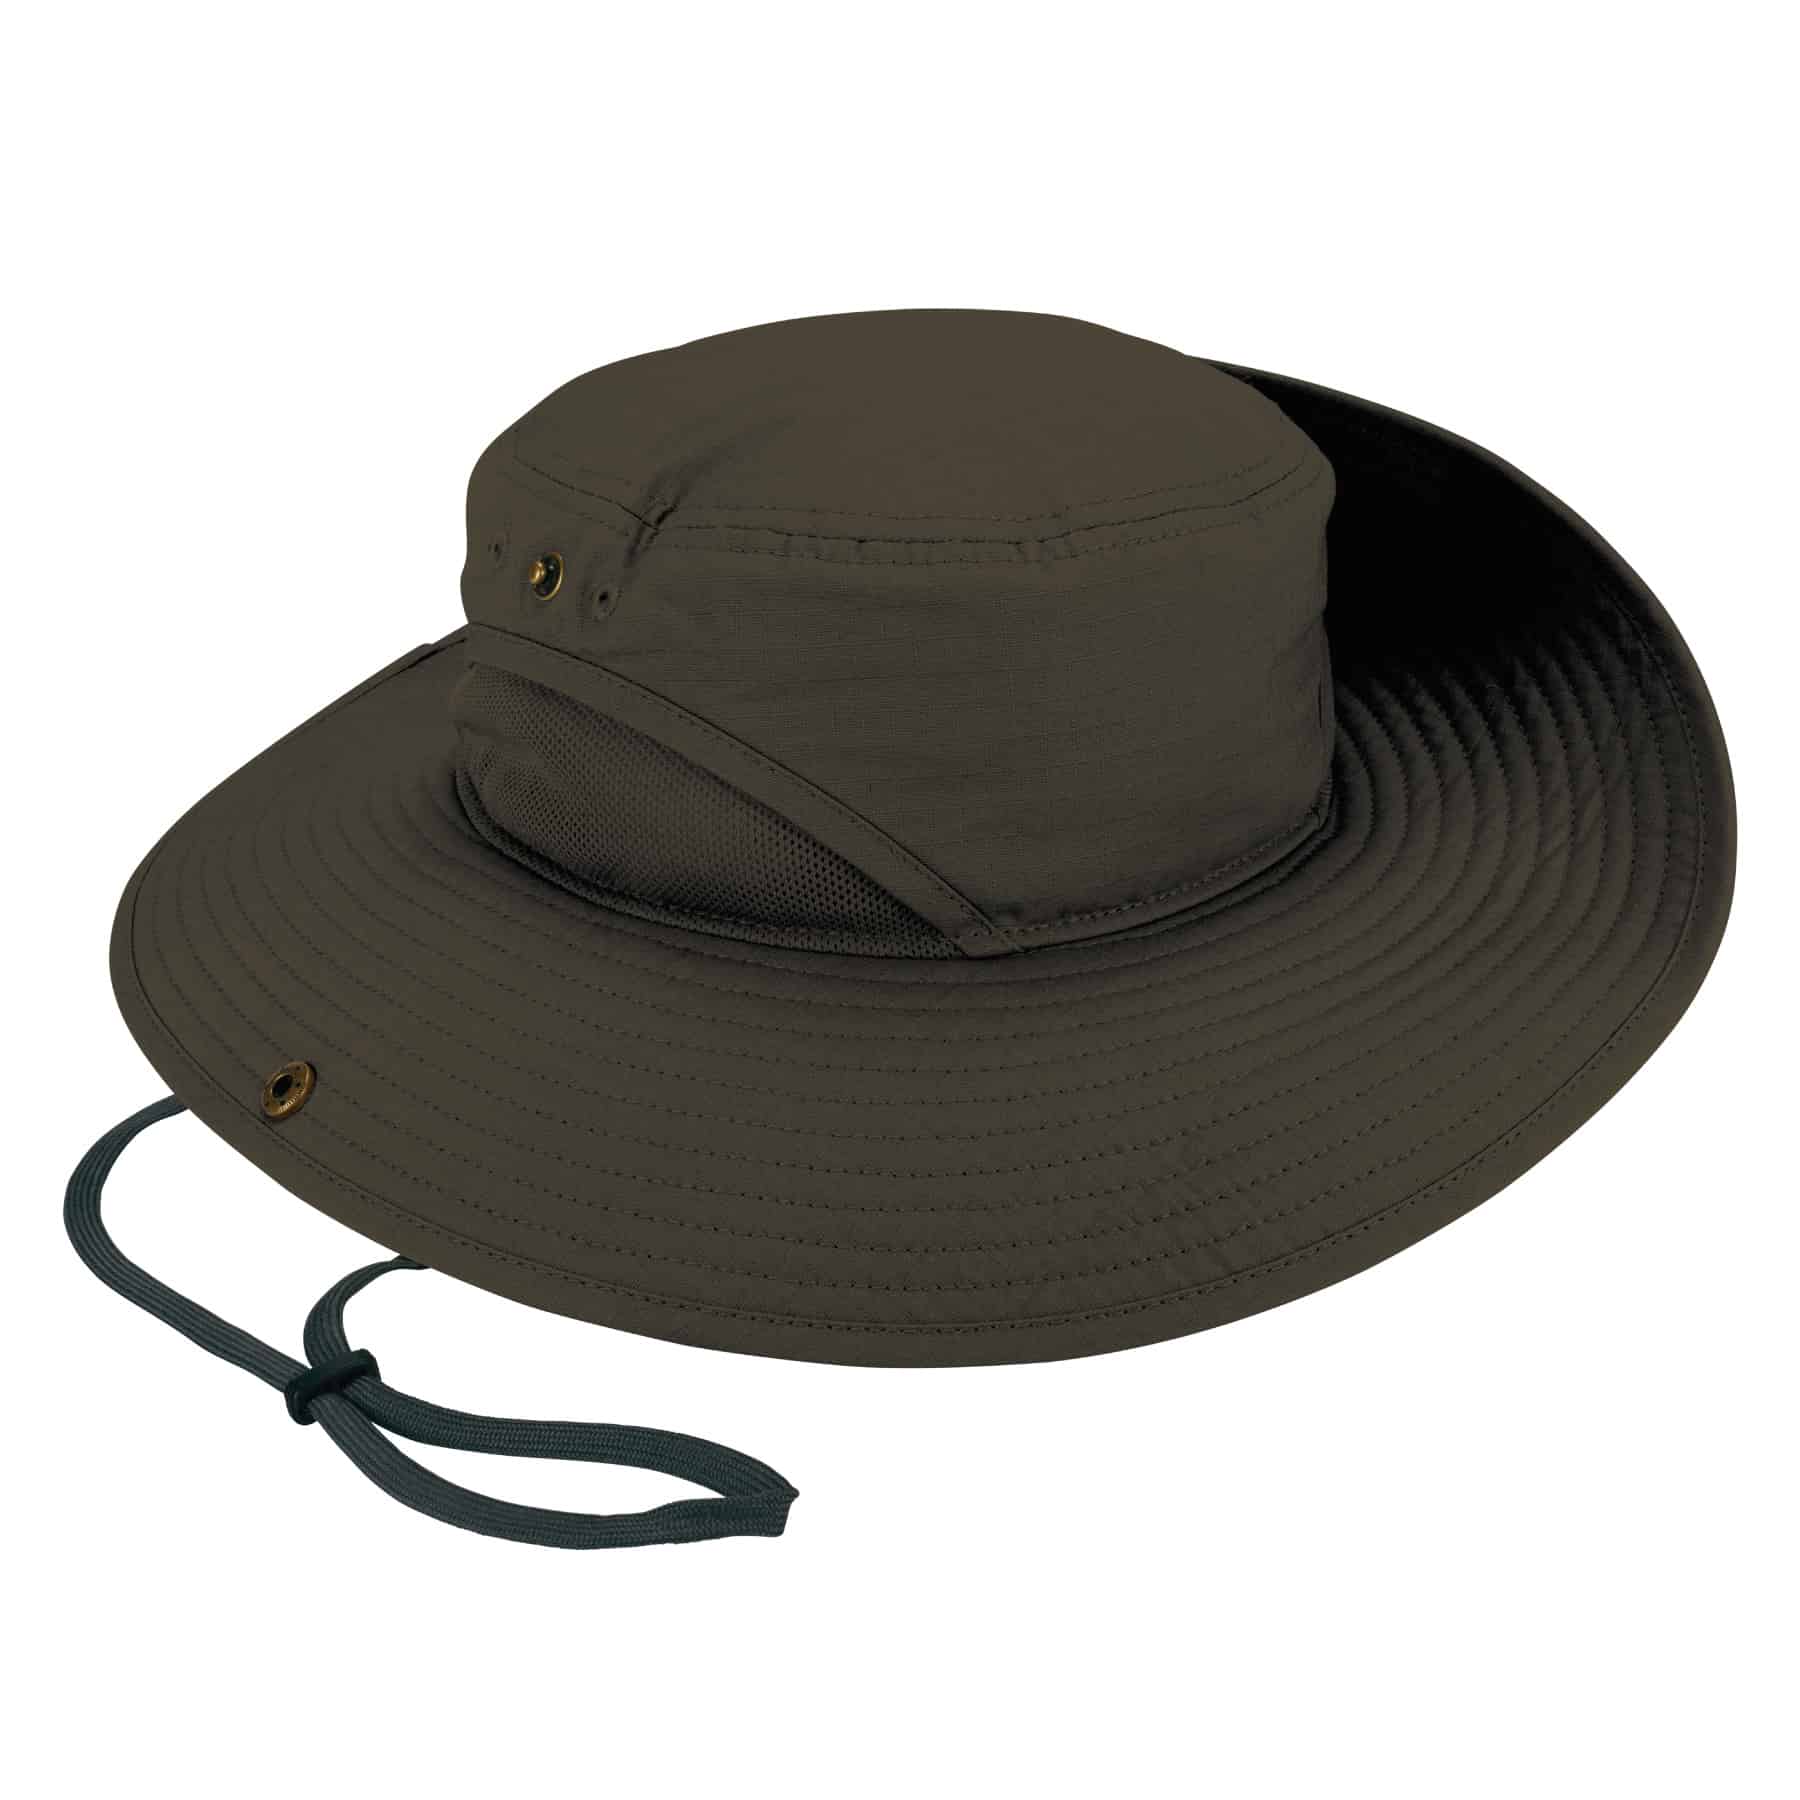 Ergodyne Adult Unisex Olive Synthetic Cooling Hat (Small/Medium